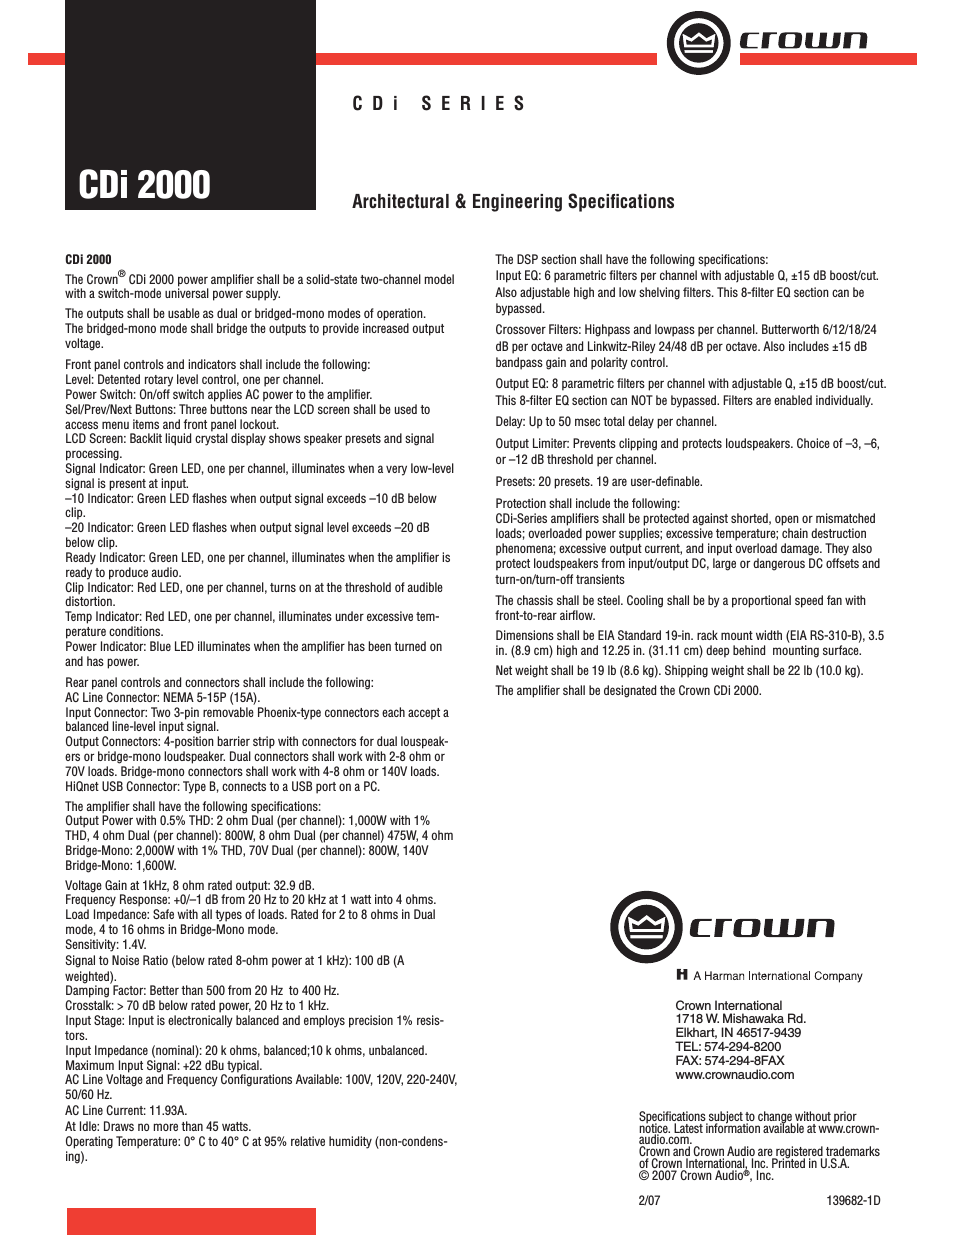 CDi Series CDi 2000